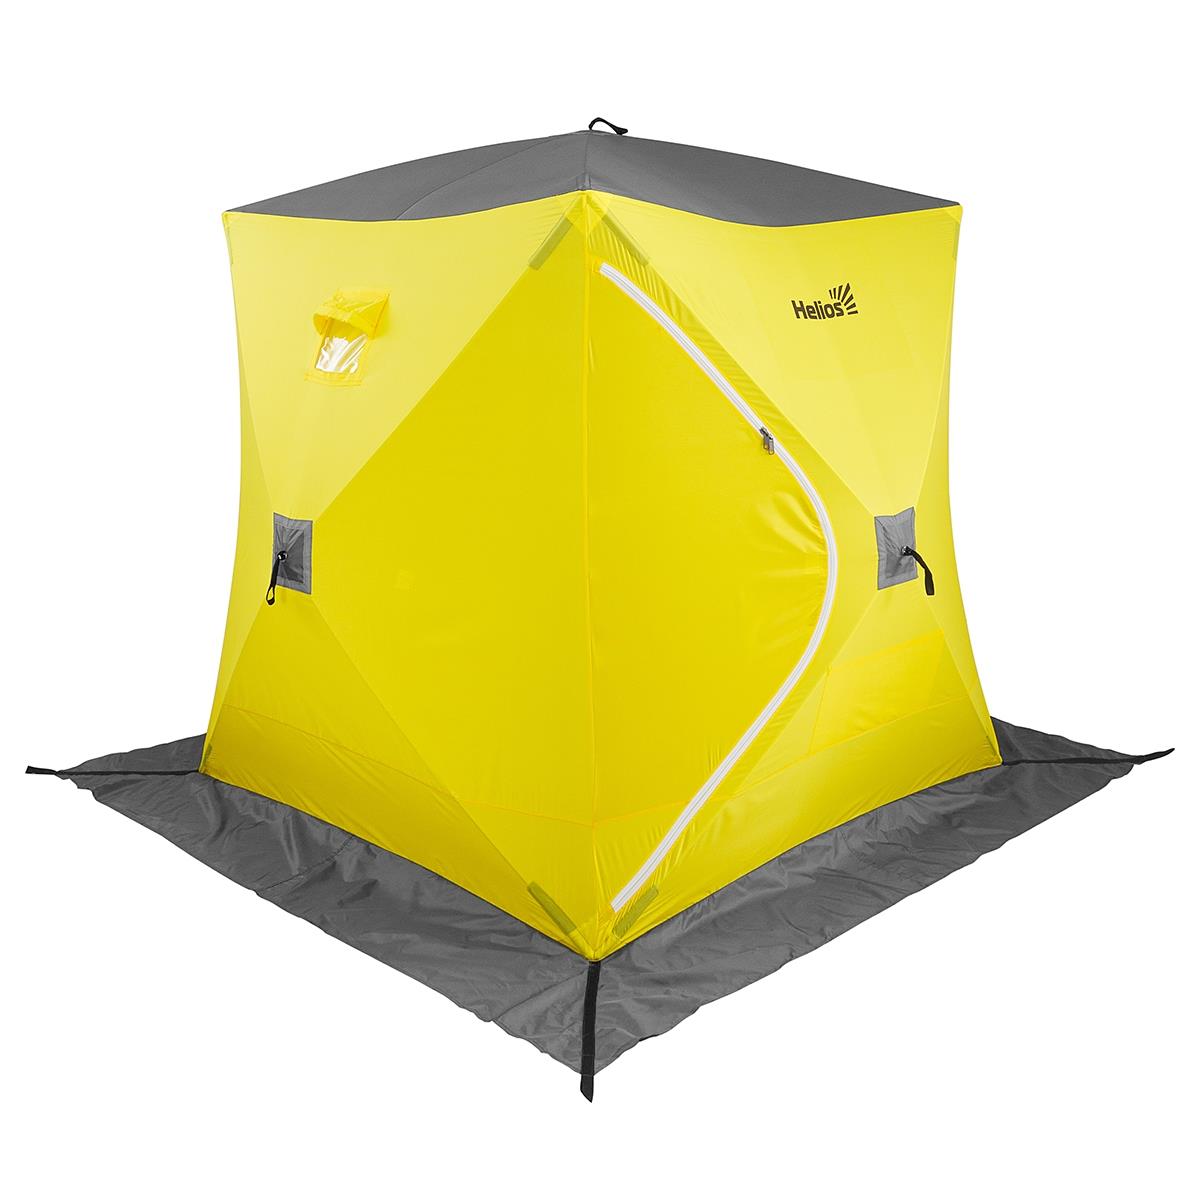 Палатка зимняя Куб 2,1х2,1 желтый/серый (TR-WSC-210YG) ТРОФЕЙ палатка зимняя piramida 2 0х2 0 yellow gray tr isp 200yg трофей